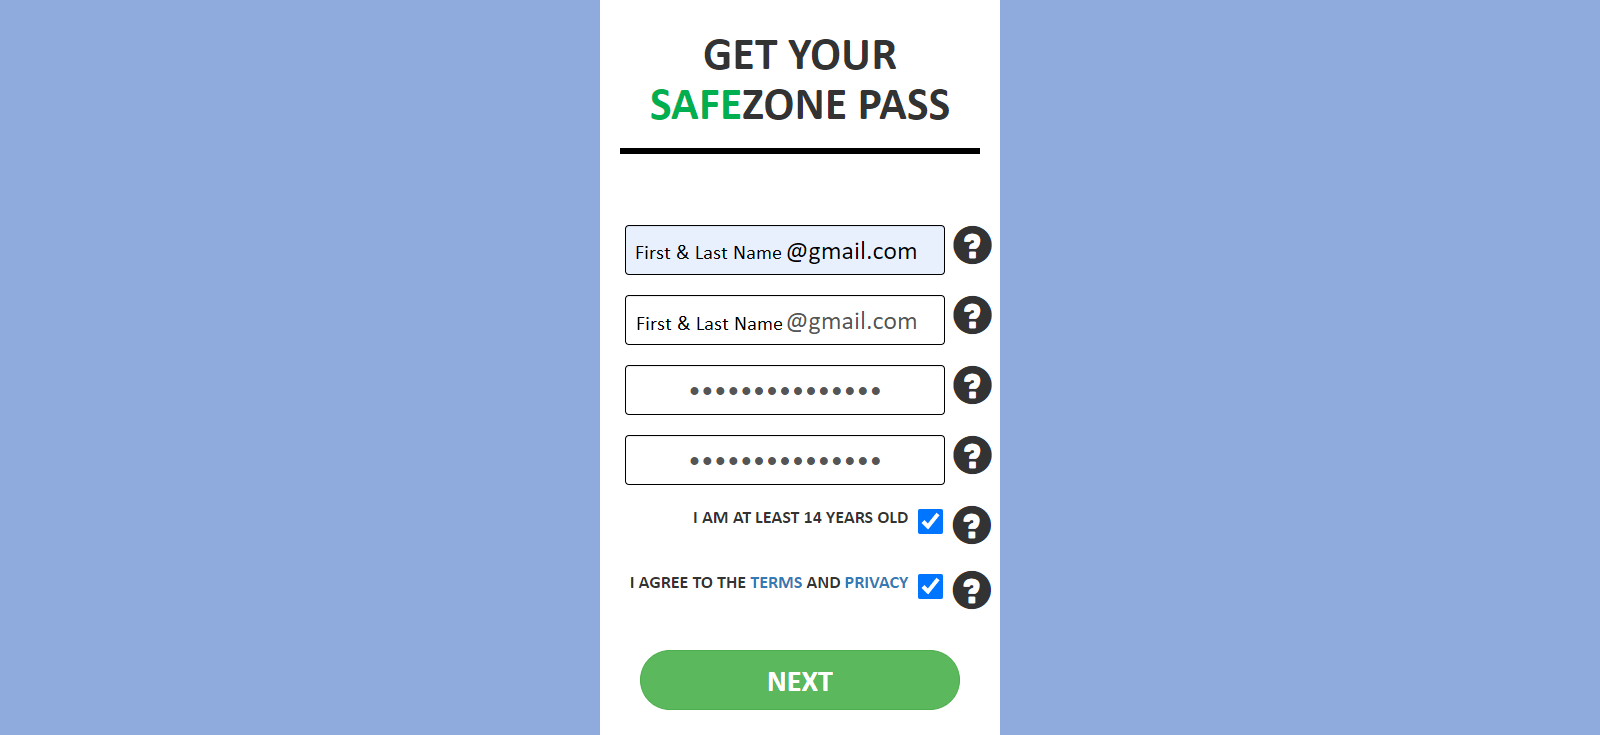 SafeZone Pass